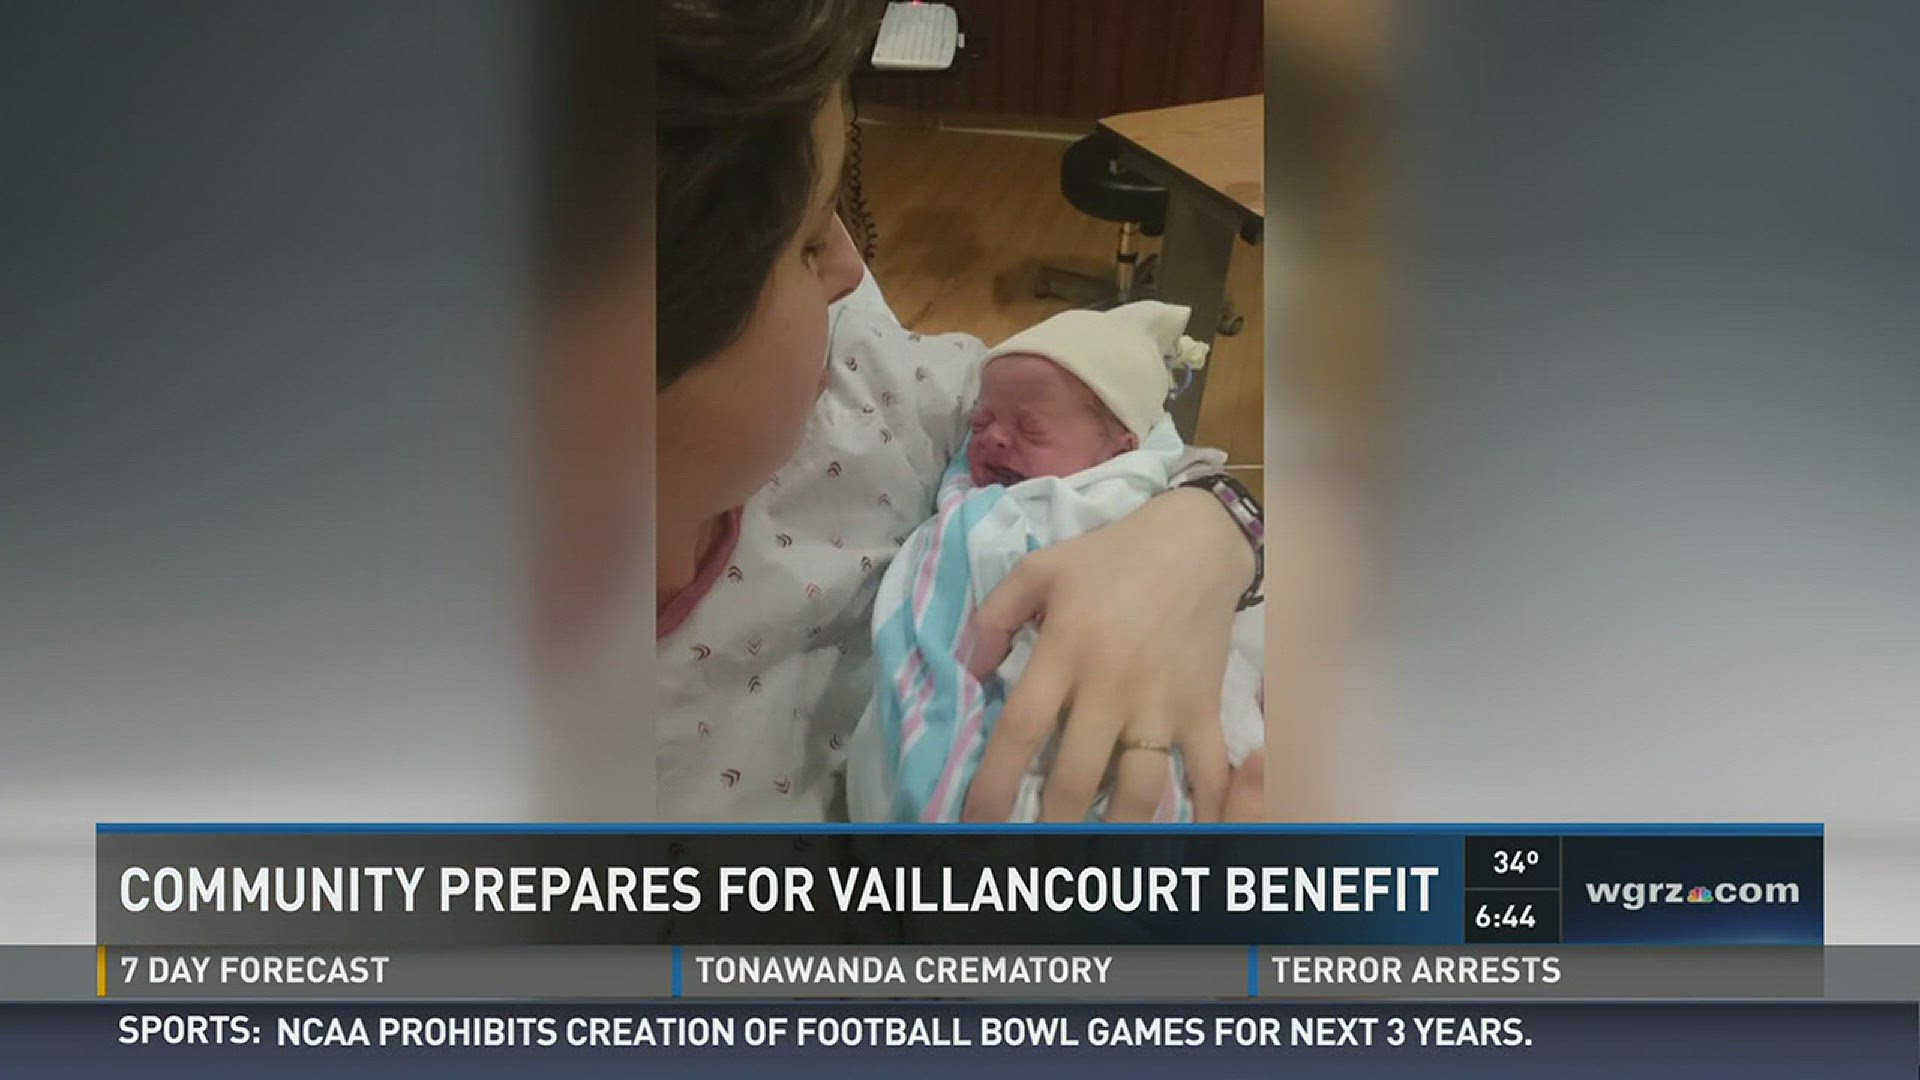 Community Plans for Vaillancourt Benefit